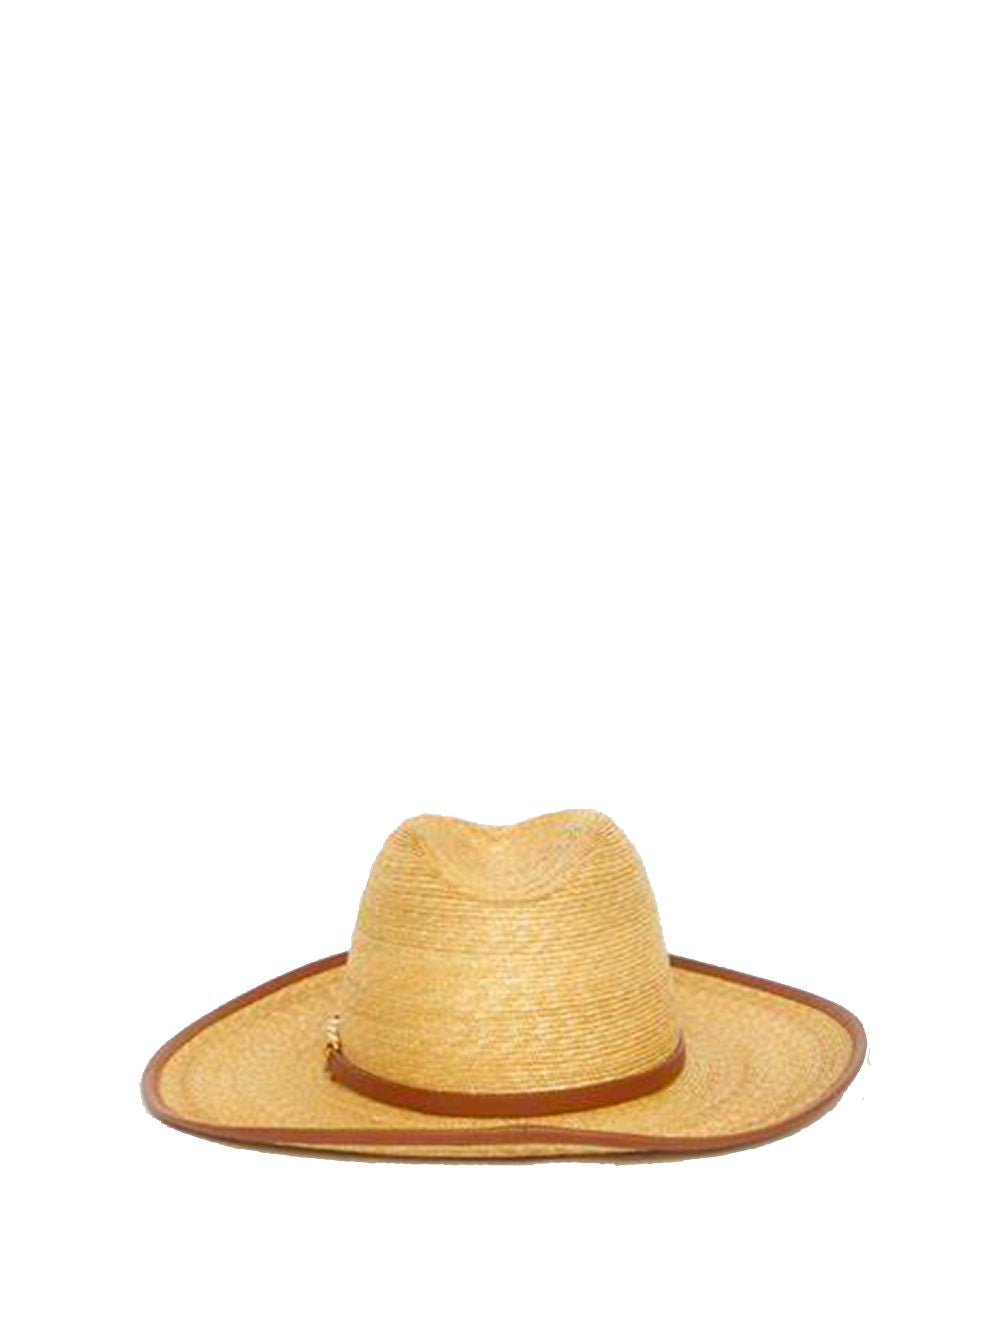 Mũ nón chải mặt Ruy băng Vlogo cho phụ nữ - beige